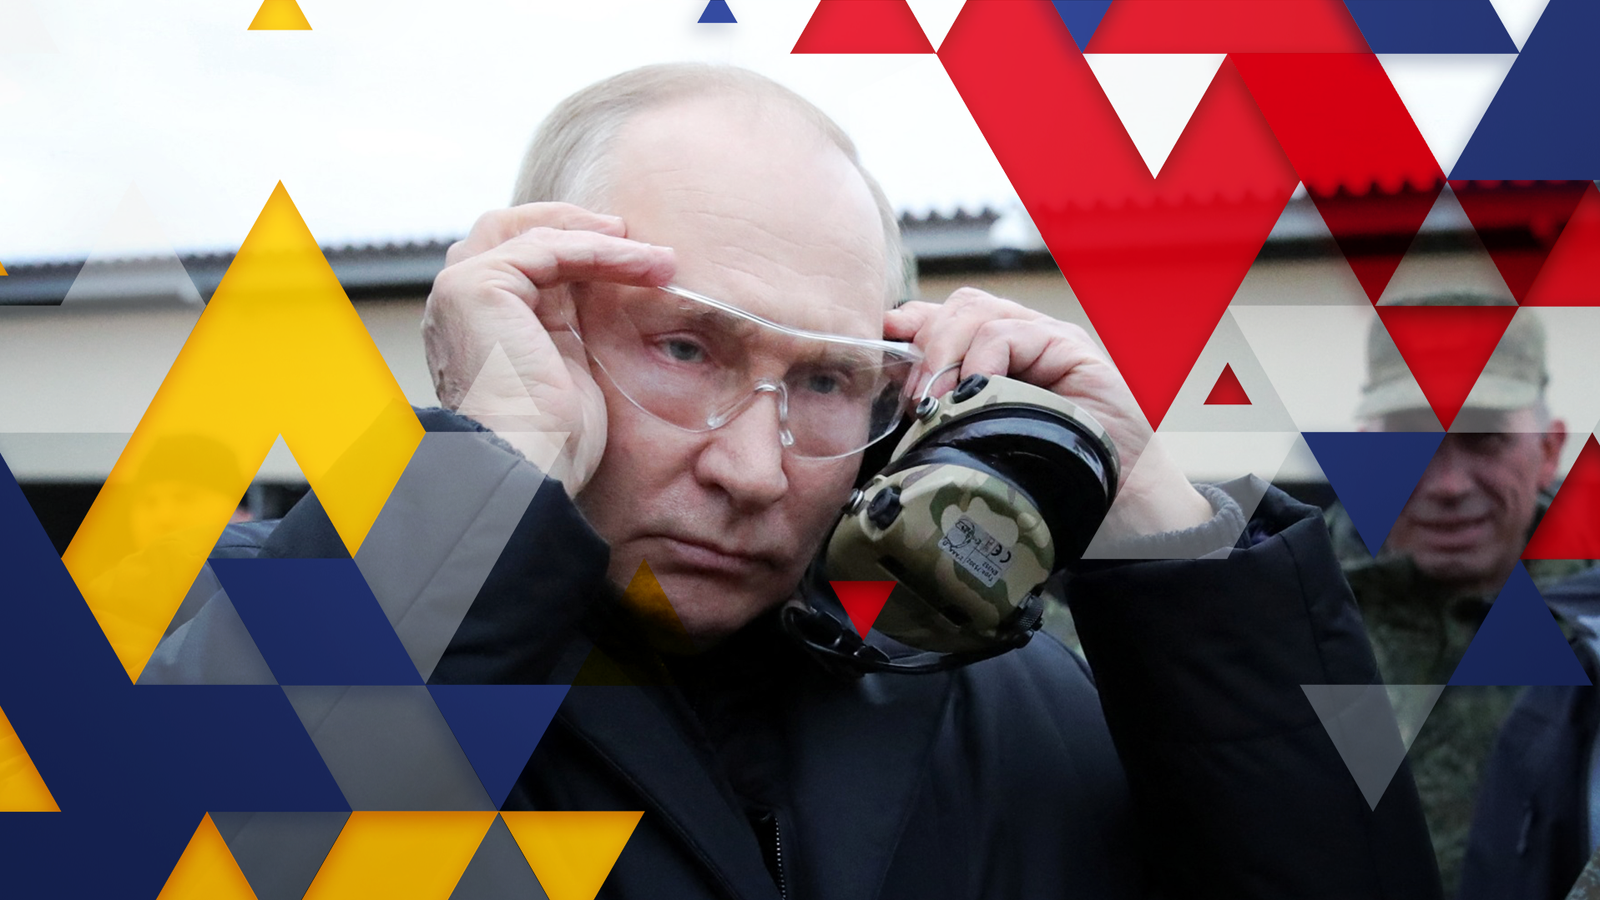 Guerre d’Ukraine : Malgré toutes ses fanfaronnades politiques, l’invasion a brisé l’illusion d’invincibilité de la Russie |  Nouvelles du monde